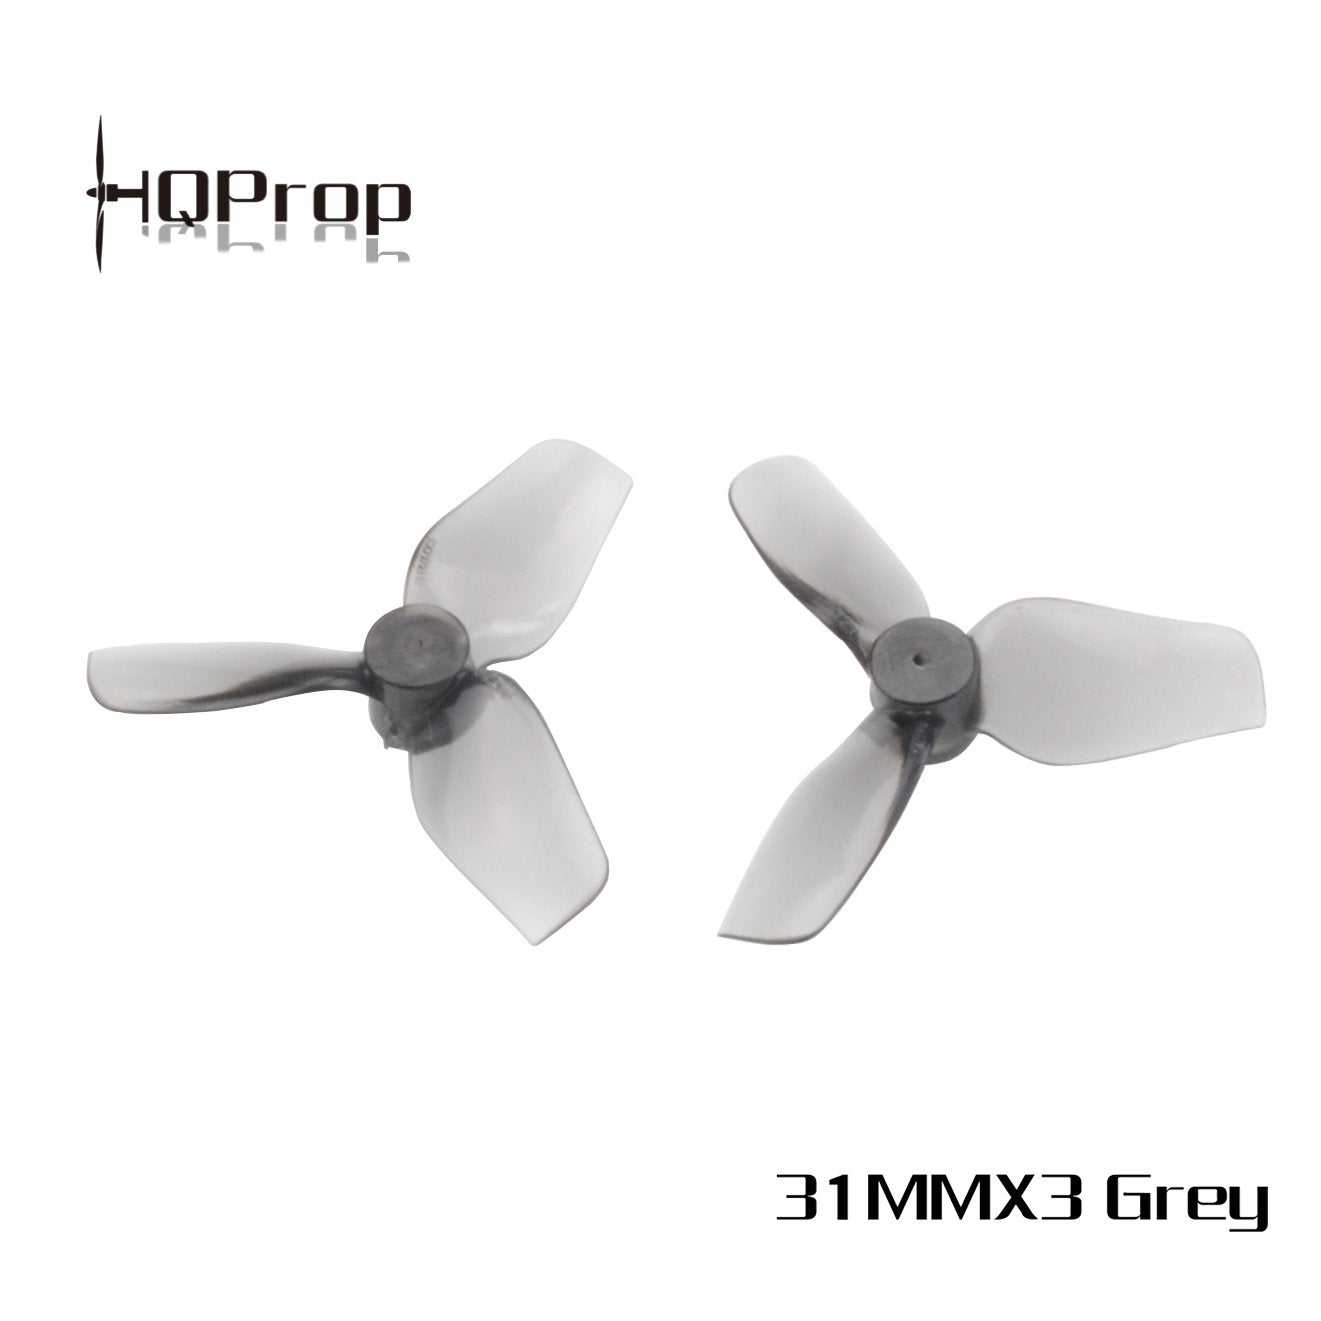 HQProp Micro Whoop Prop 31MMX3 Propellers 3 - HQProp - Drone Authority